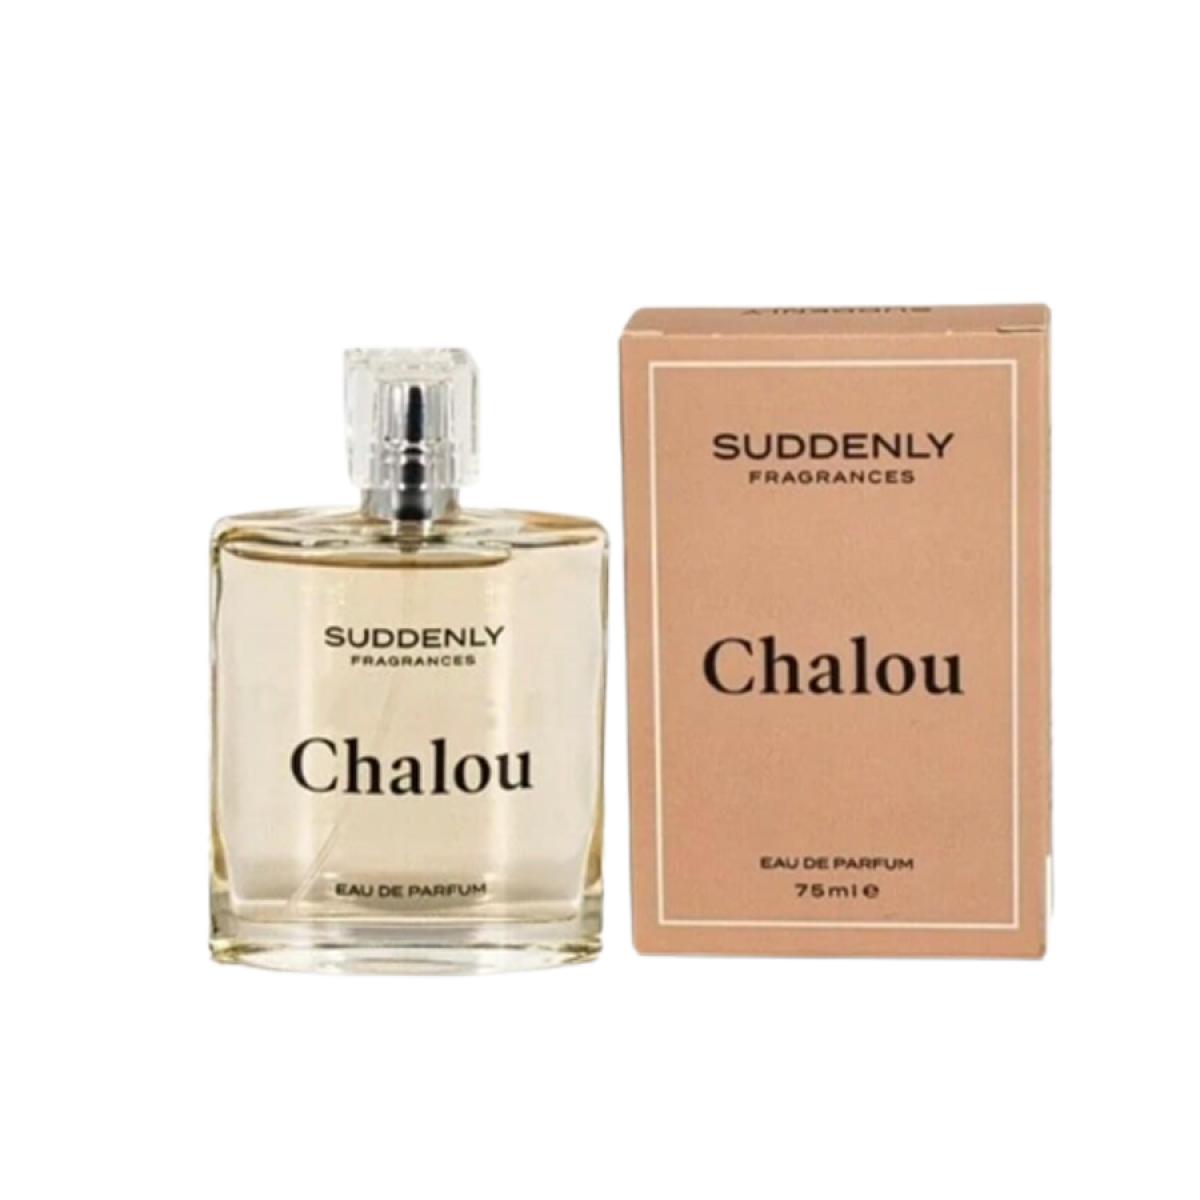 Chalou Eau de Parfum de Suddenly